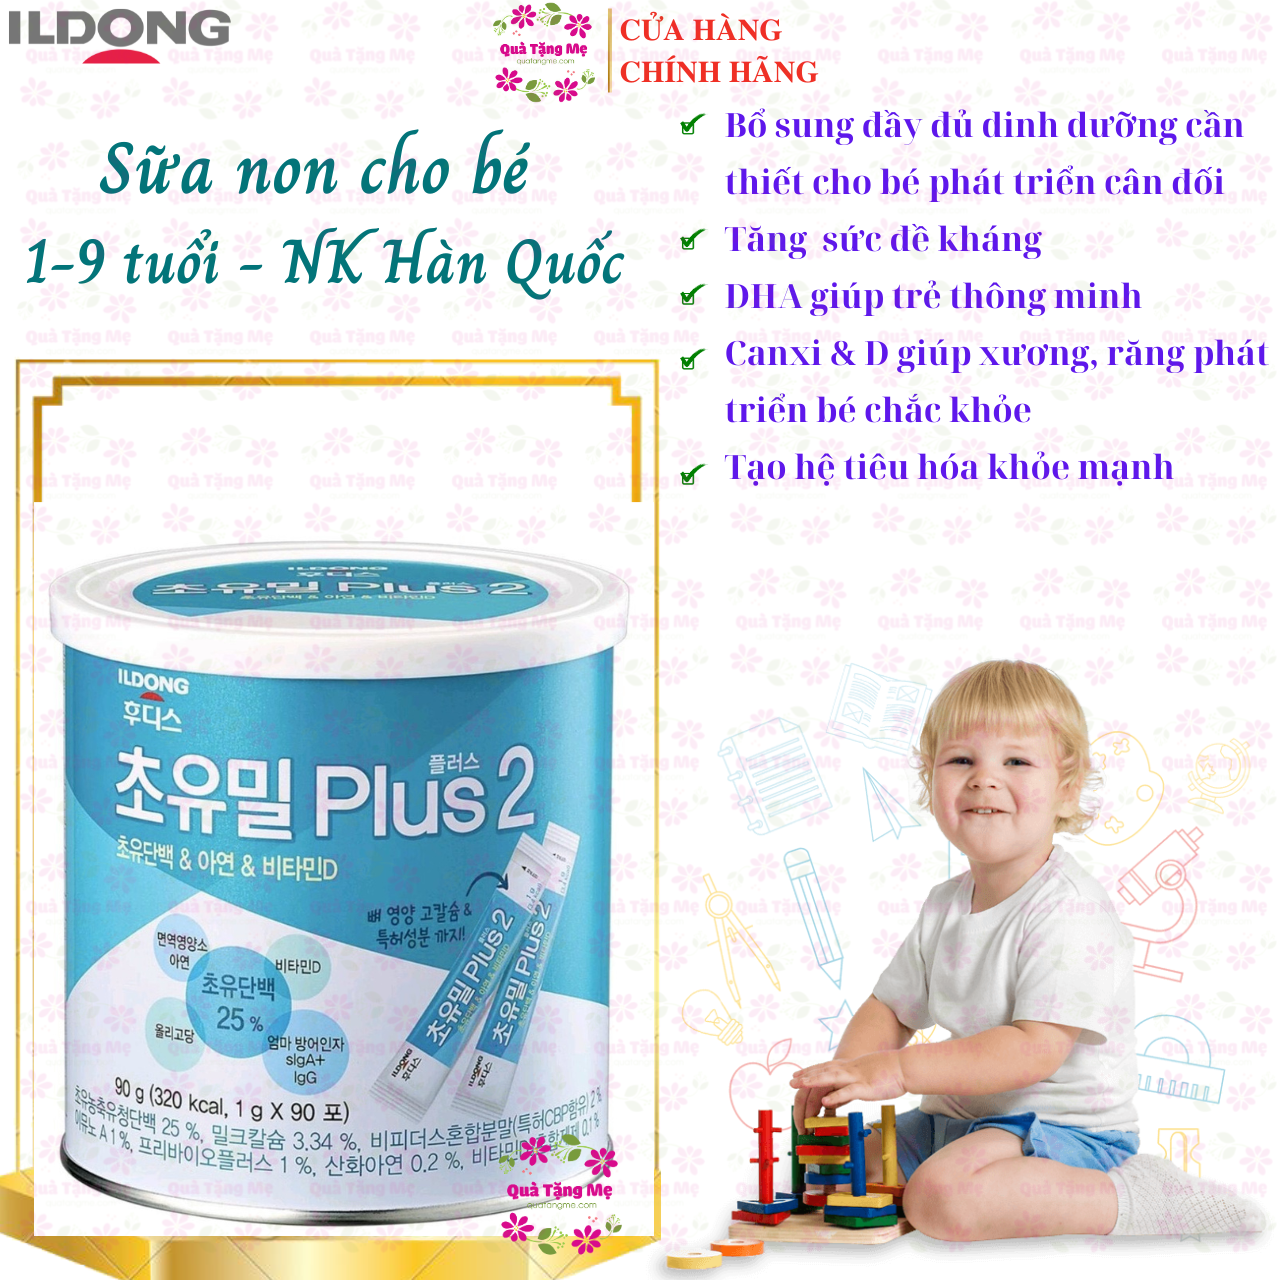 Sữa non cho bé từ 1-9 tuổi Ildong Plus 2 Hàn Quốc giúp trẻ phát triển trí não, xương, răng, tăng sức đề kháng, tiêu hóa tốt - QuaTangMe Extaste